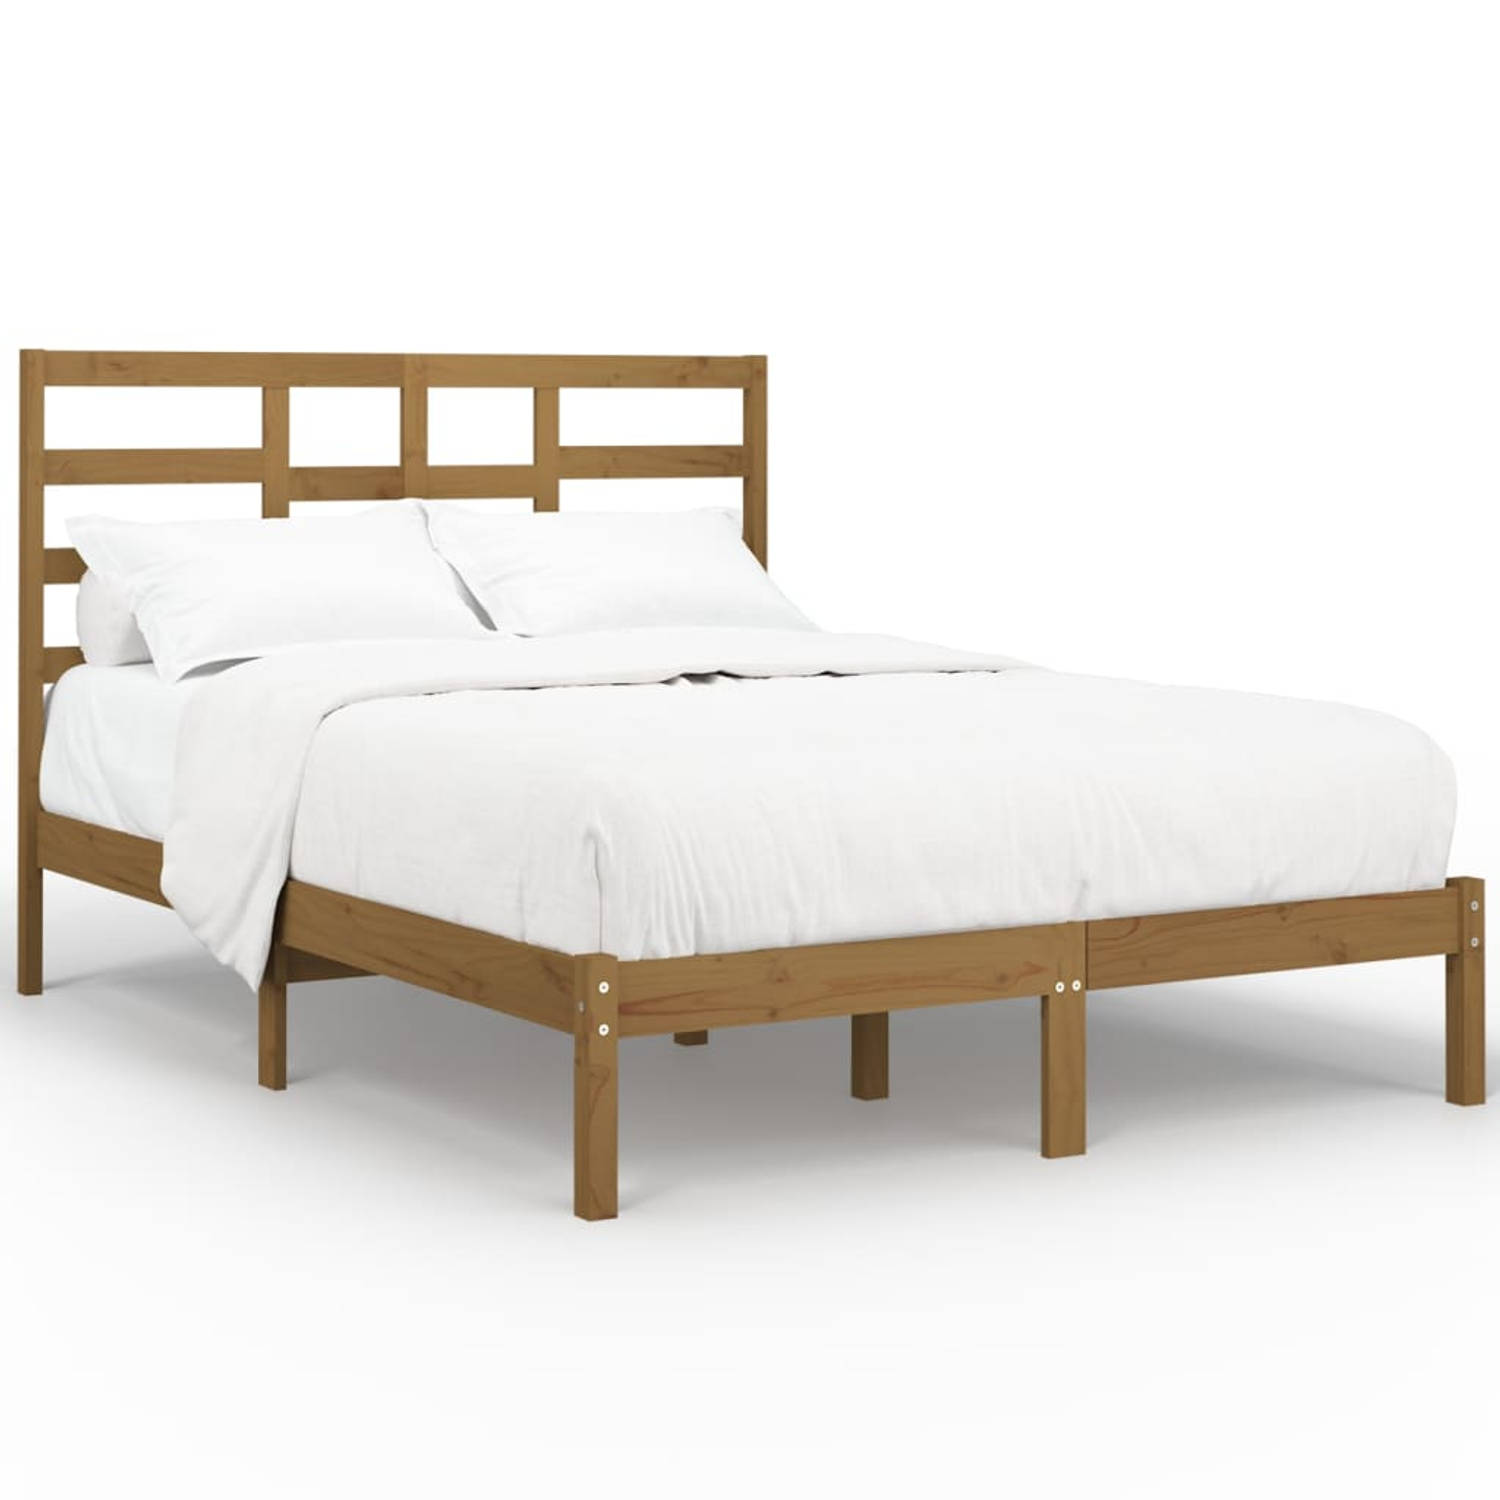 The Living Store Bedframe massief hout honingbruin 160x200 cm - Bedframe - Bedframes - Bed - Bedbodem - Ledikant - Bed Frame - Massief Houten Bedframe - Slaapmeubel - Tweepersoonsb